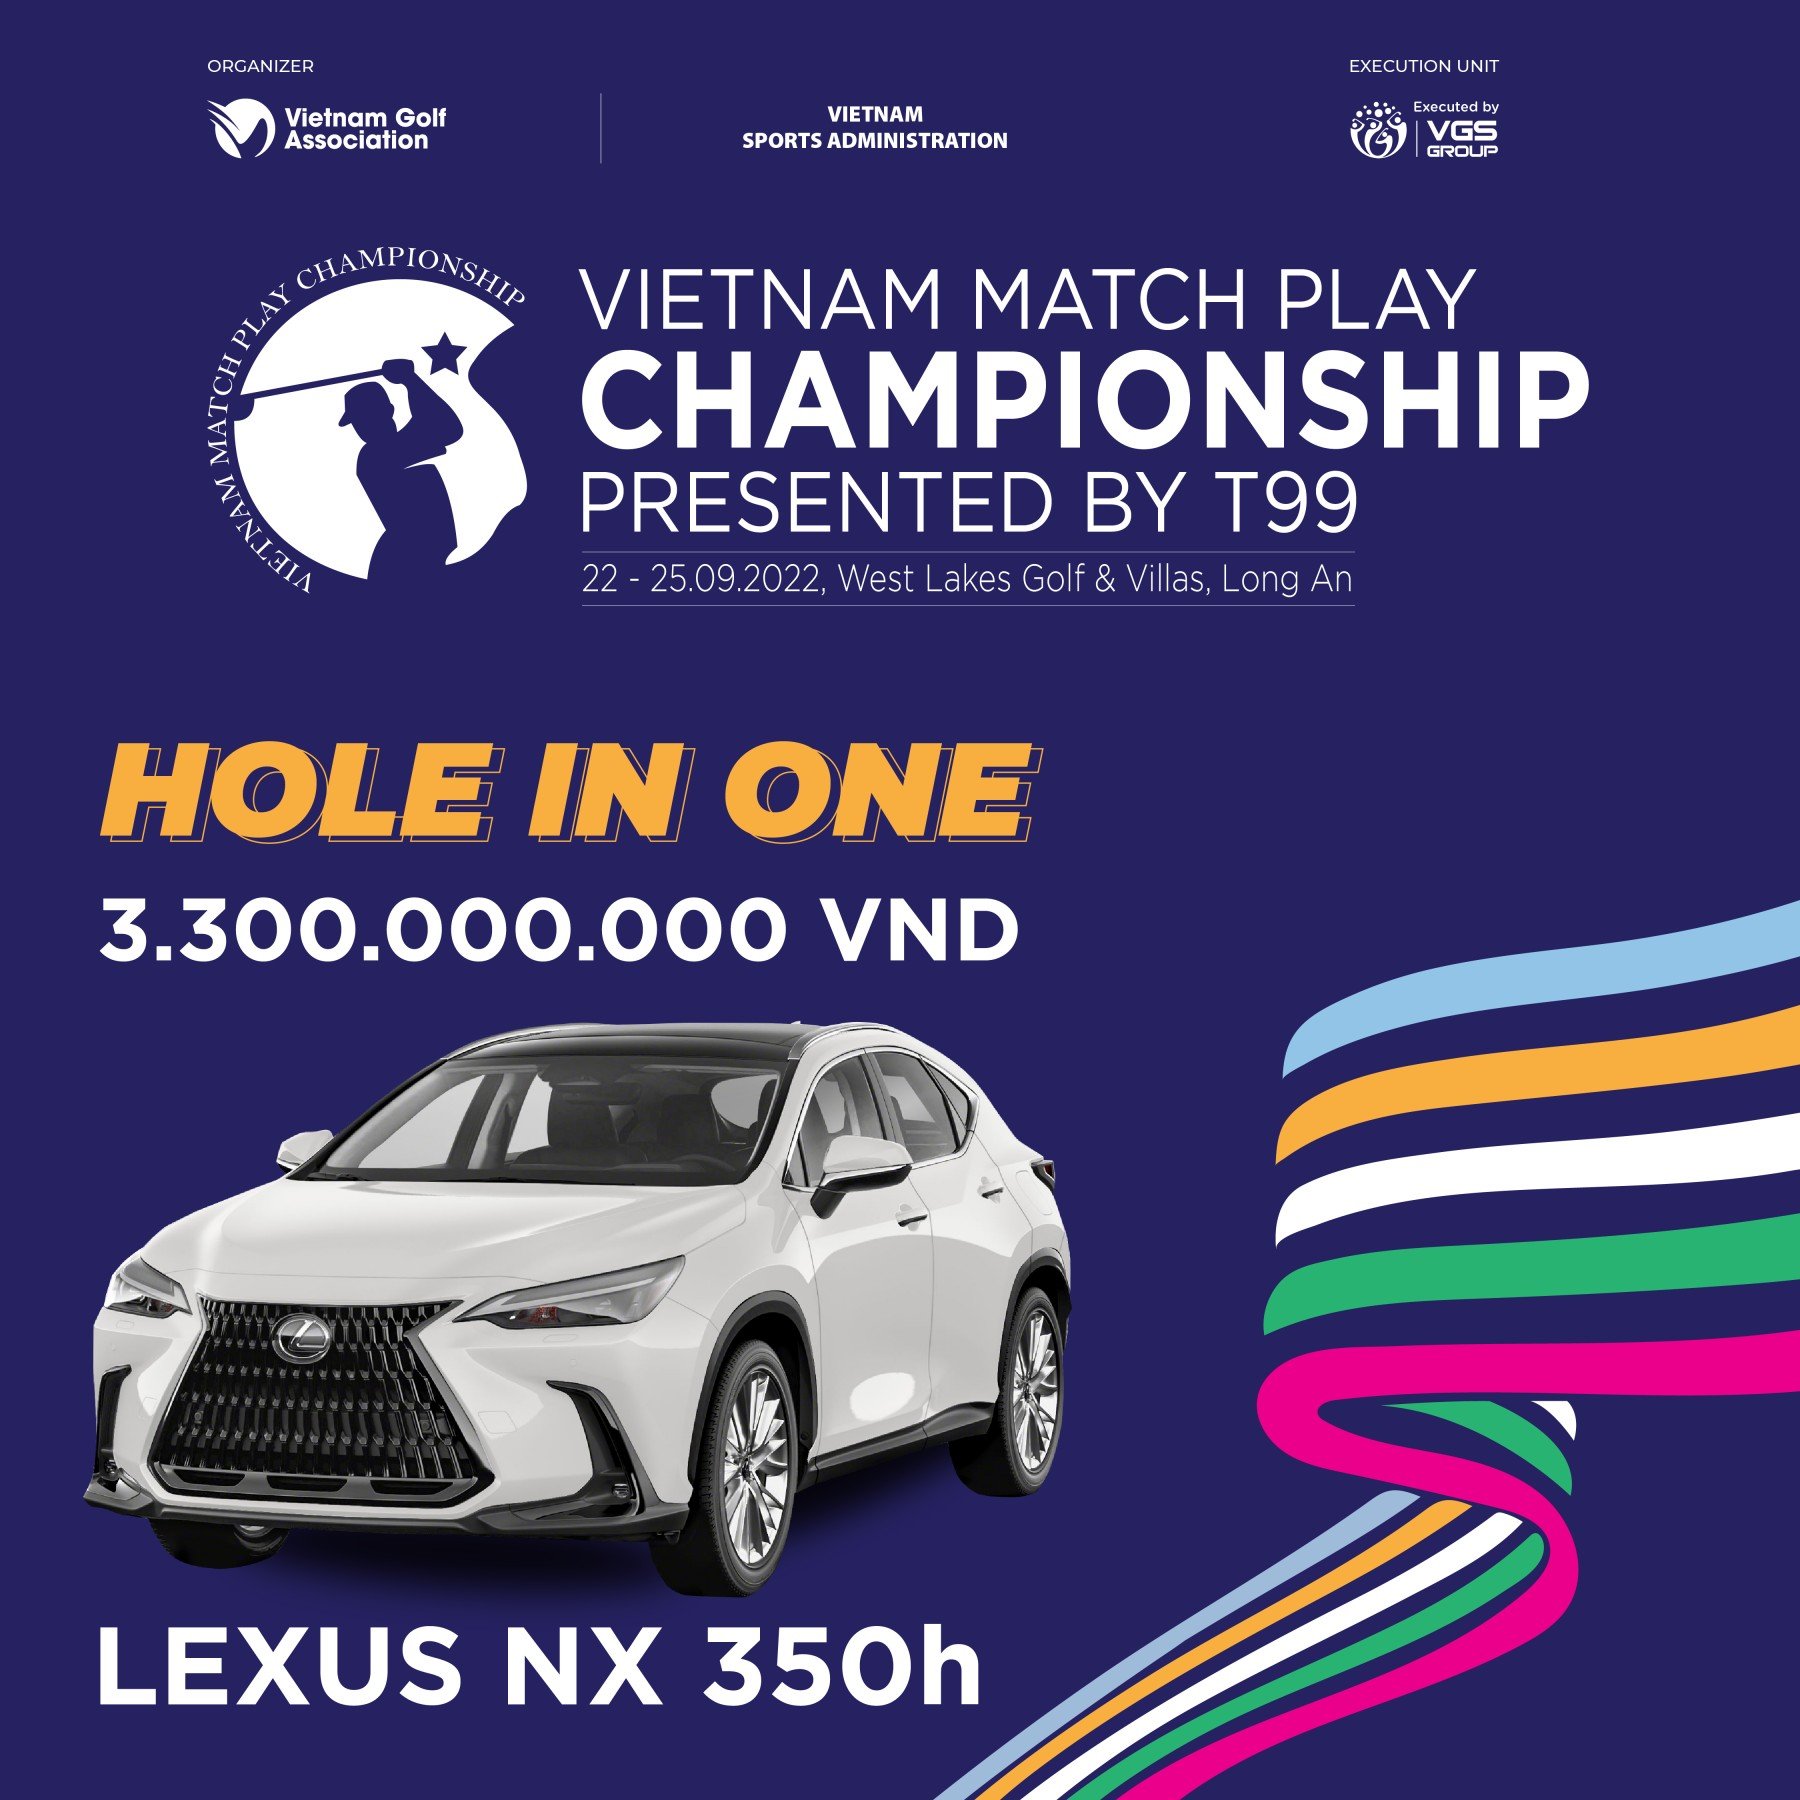 Lexus - Thử thách, khác biệt cùng Vietnam Matchplay Championship 2022 - Ảnh 2.